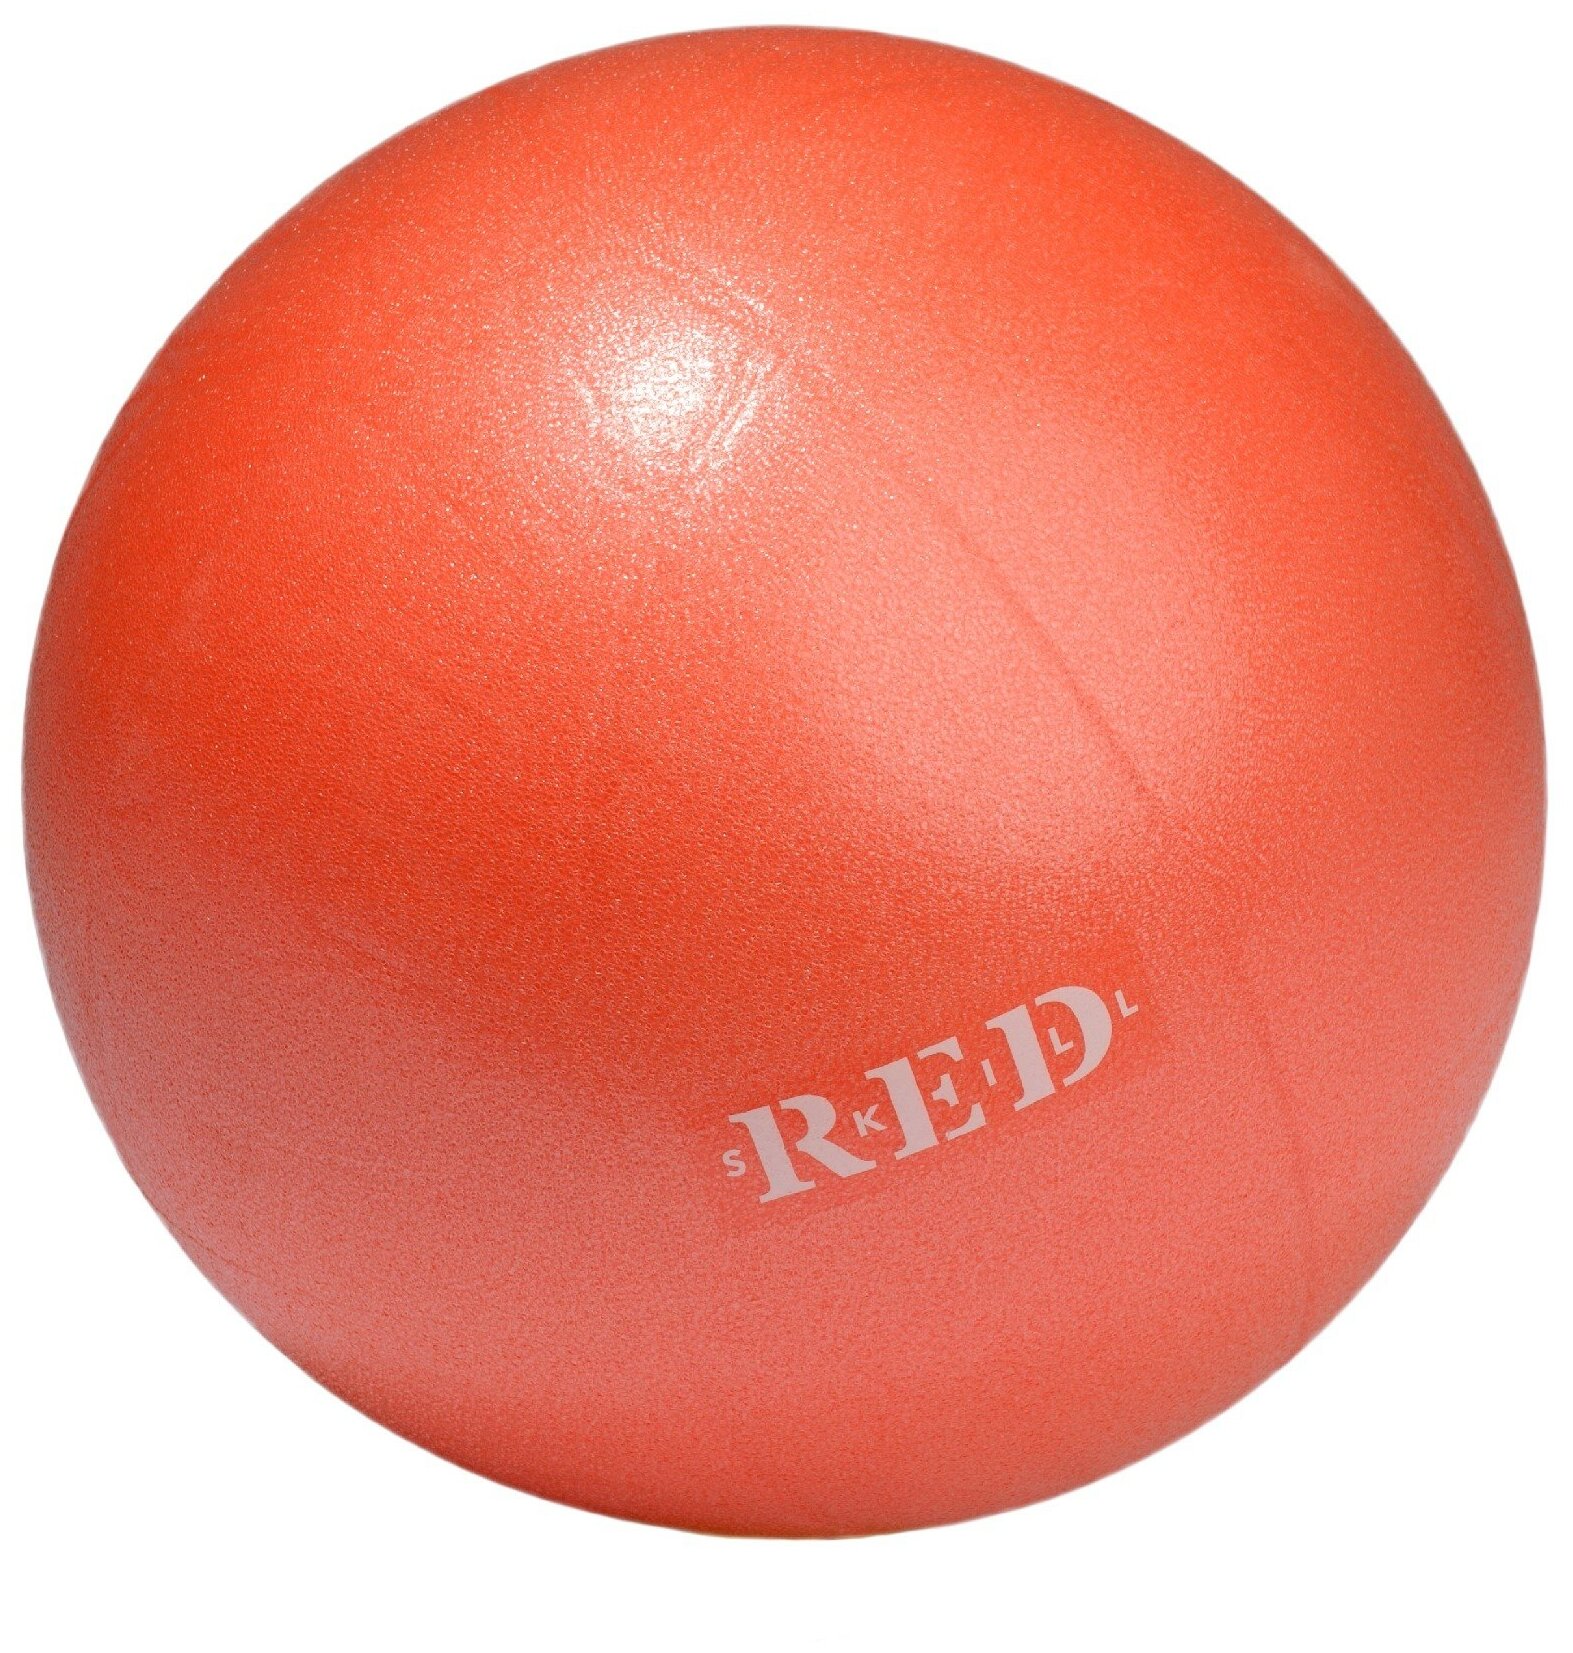 RED Skill - надувной мяч для пилатеса, 25 см